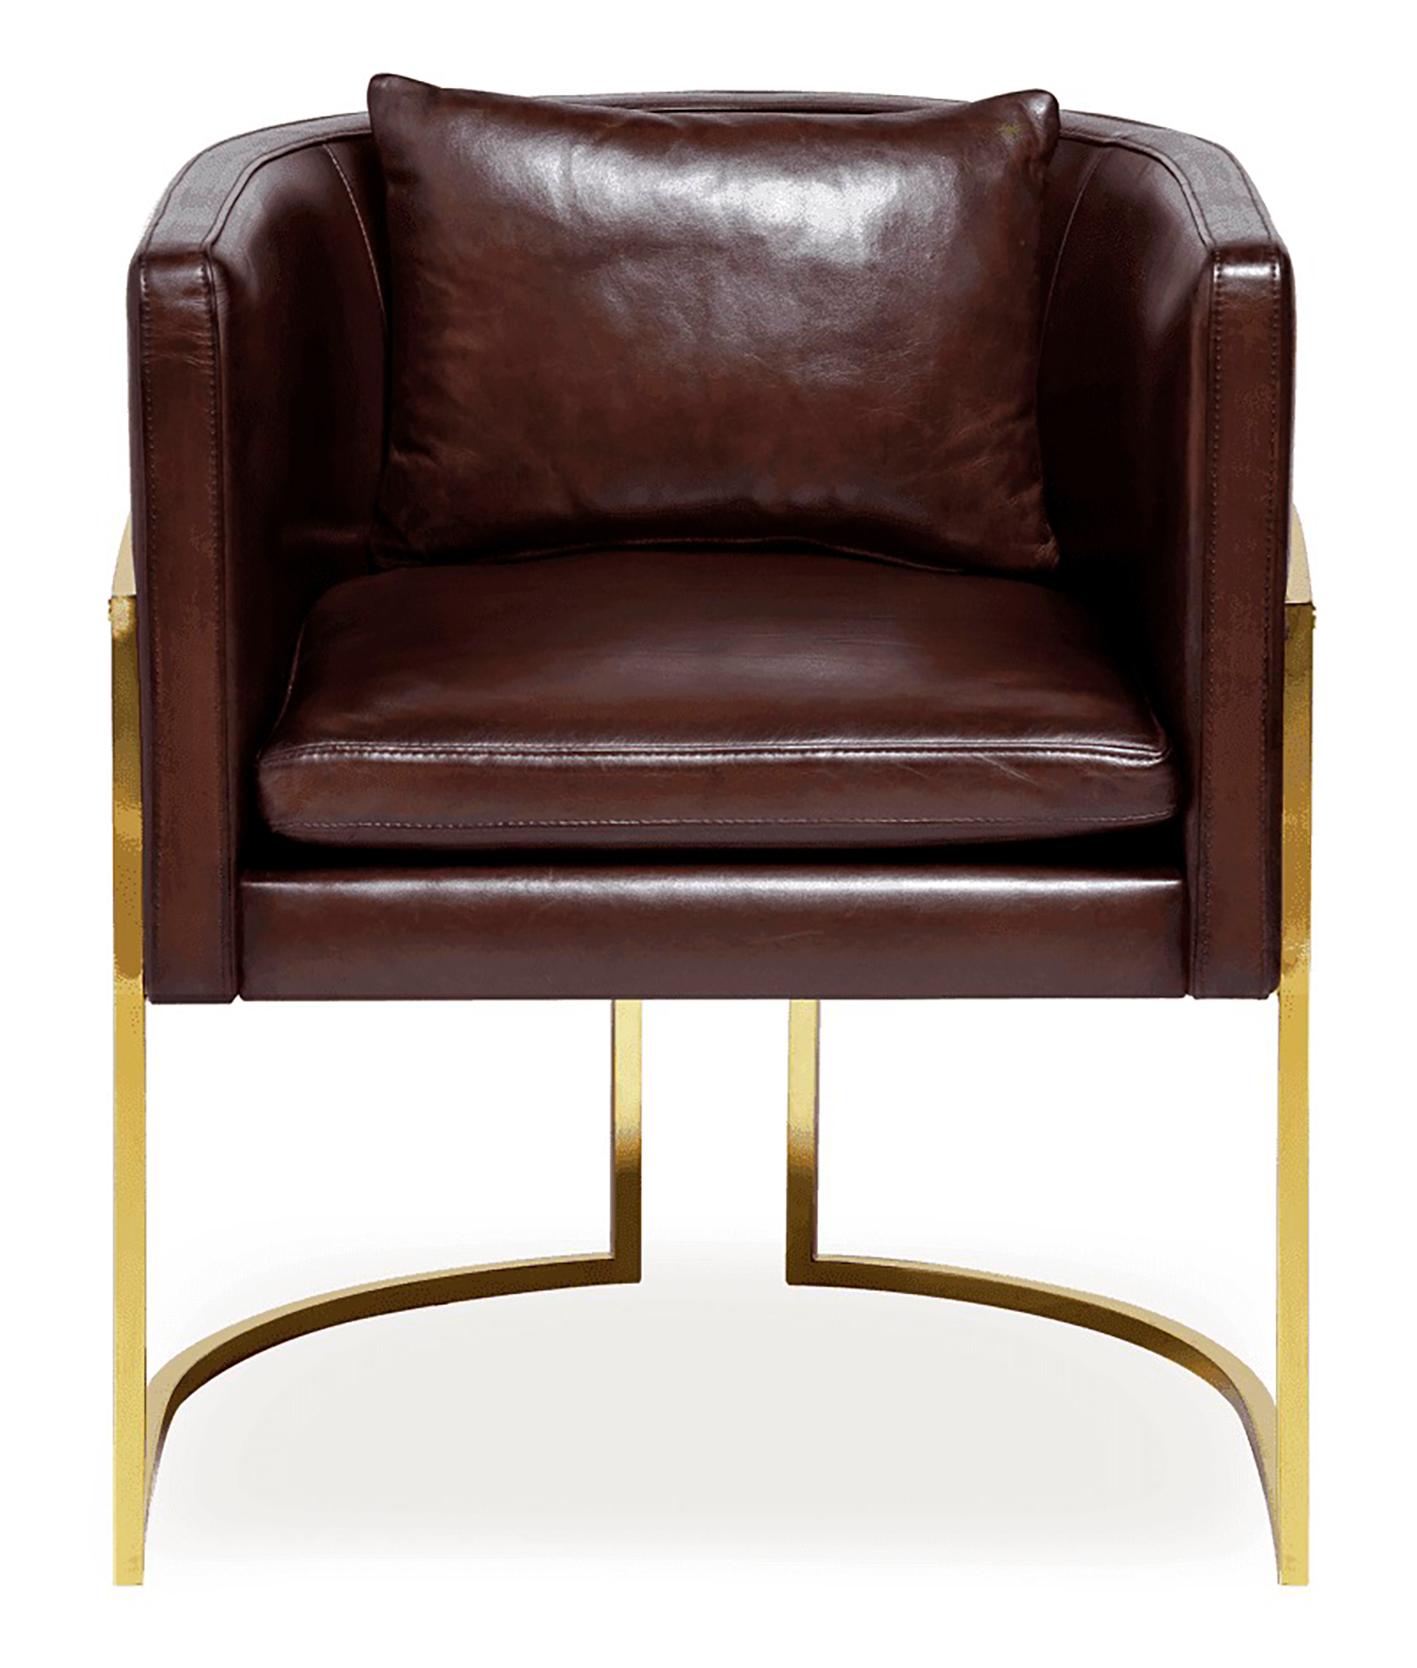 Der aktuelle Trend zu Art-Déco-Möbeln in Kombination mit der Liebe zum Leder macht diesen Stuhl zu einem der begehrtesten Stücke in unserer Kollektion. Der Stuhl Beverly Hills ist ein vielseitiges Möbelstück, das als Ess-, Wohn- oder Bürostuhl